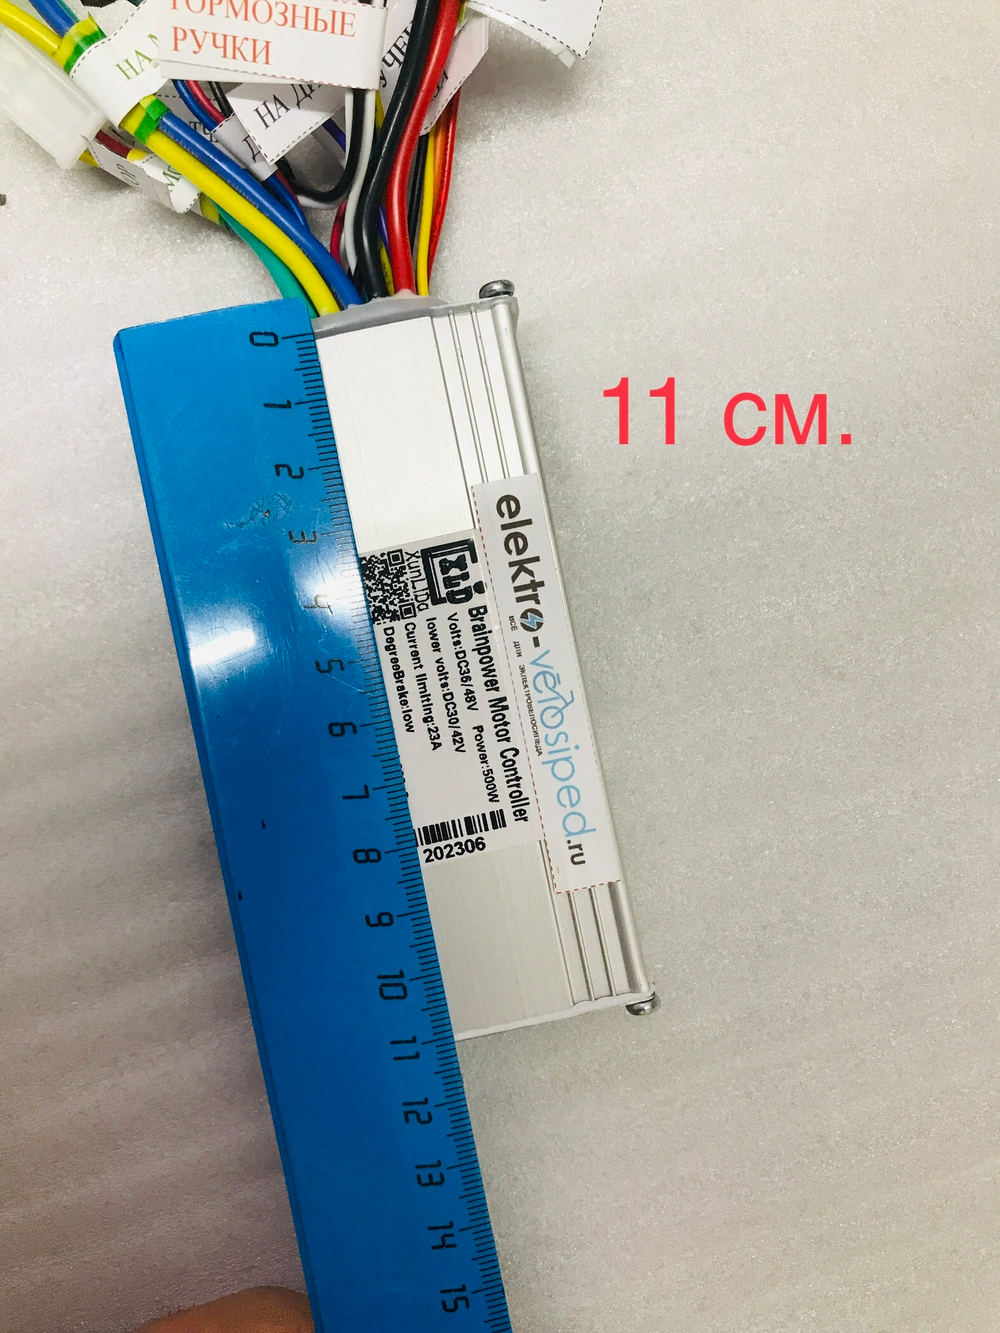 Программируемый многофункциональный контроллер на 36-48v/500w/23A + дисплей S 866 для электровелосипеда